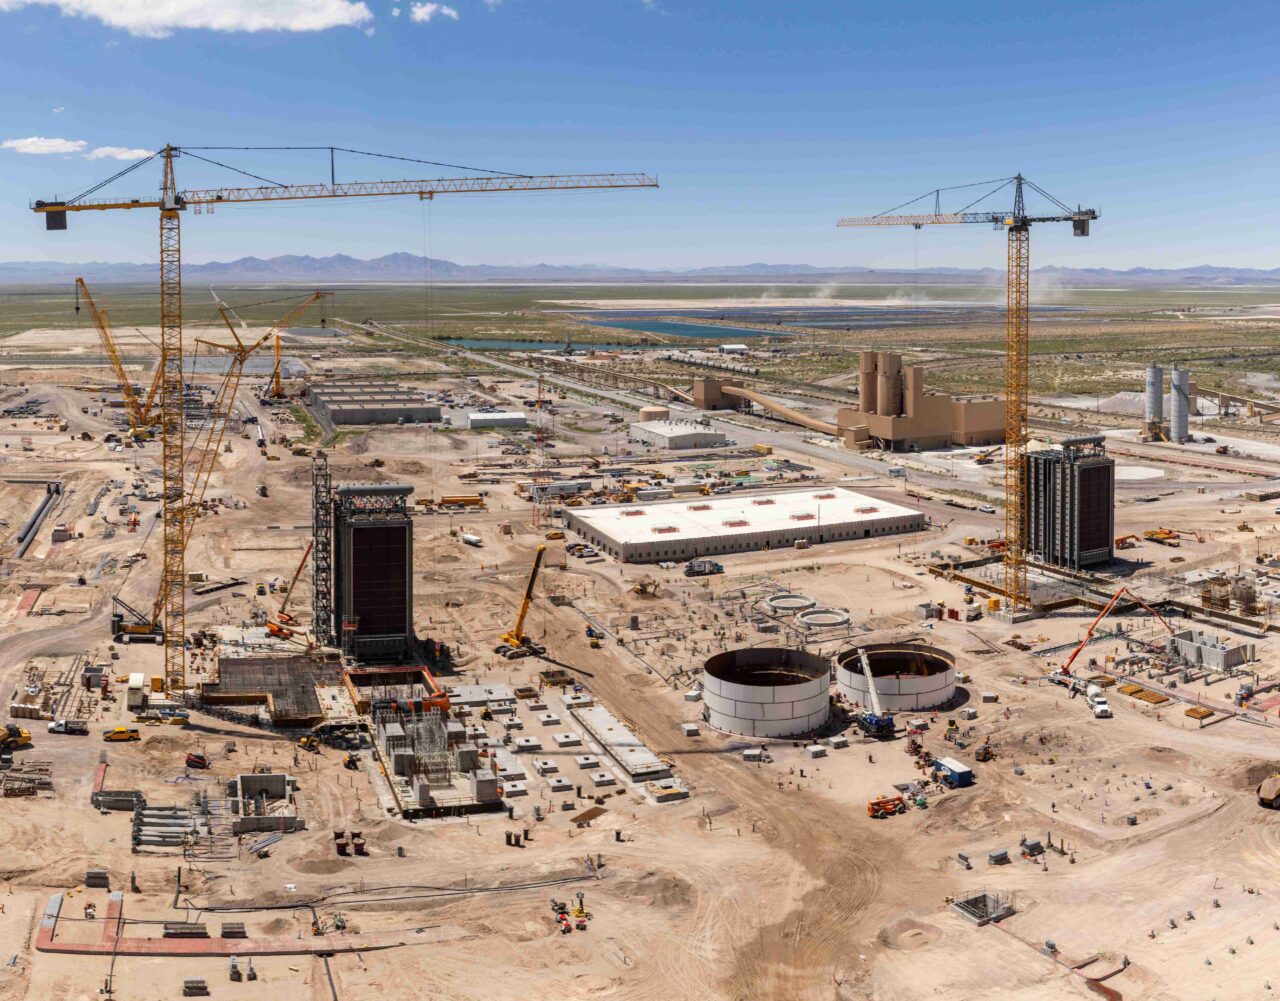 J-Class Gas Turbines Arrive at IPP Renewed, Milestone for Giant Utah Cavern Hydrogen Hub Project